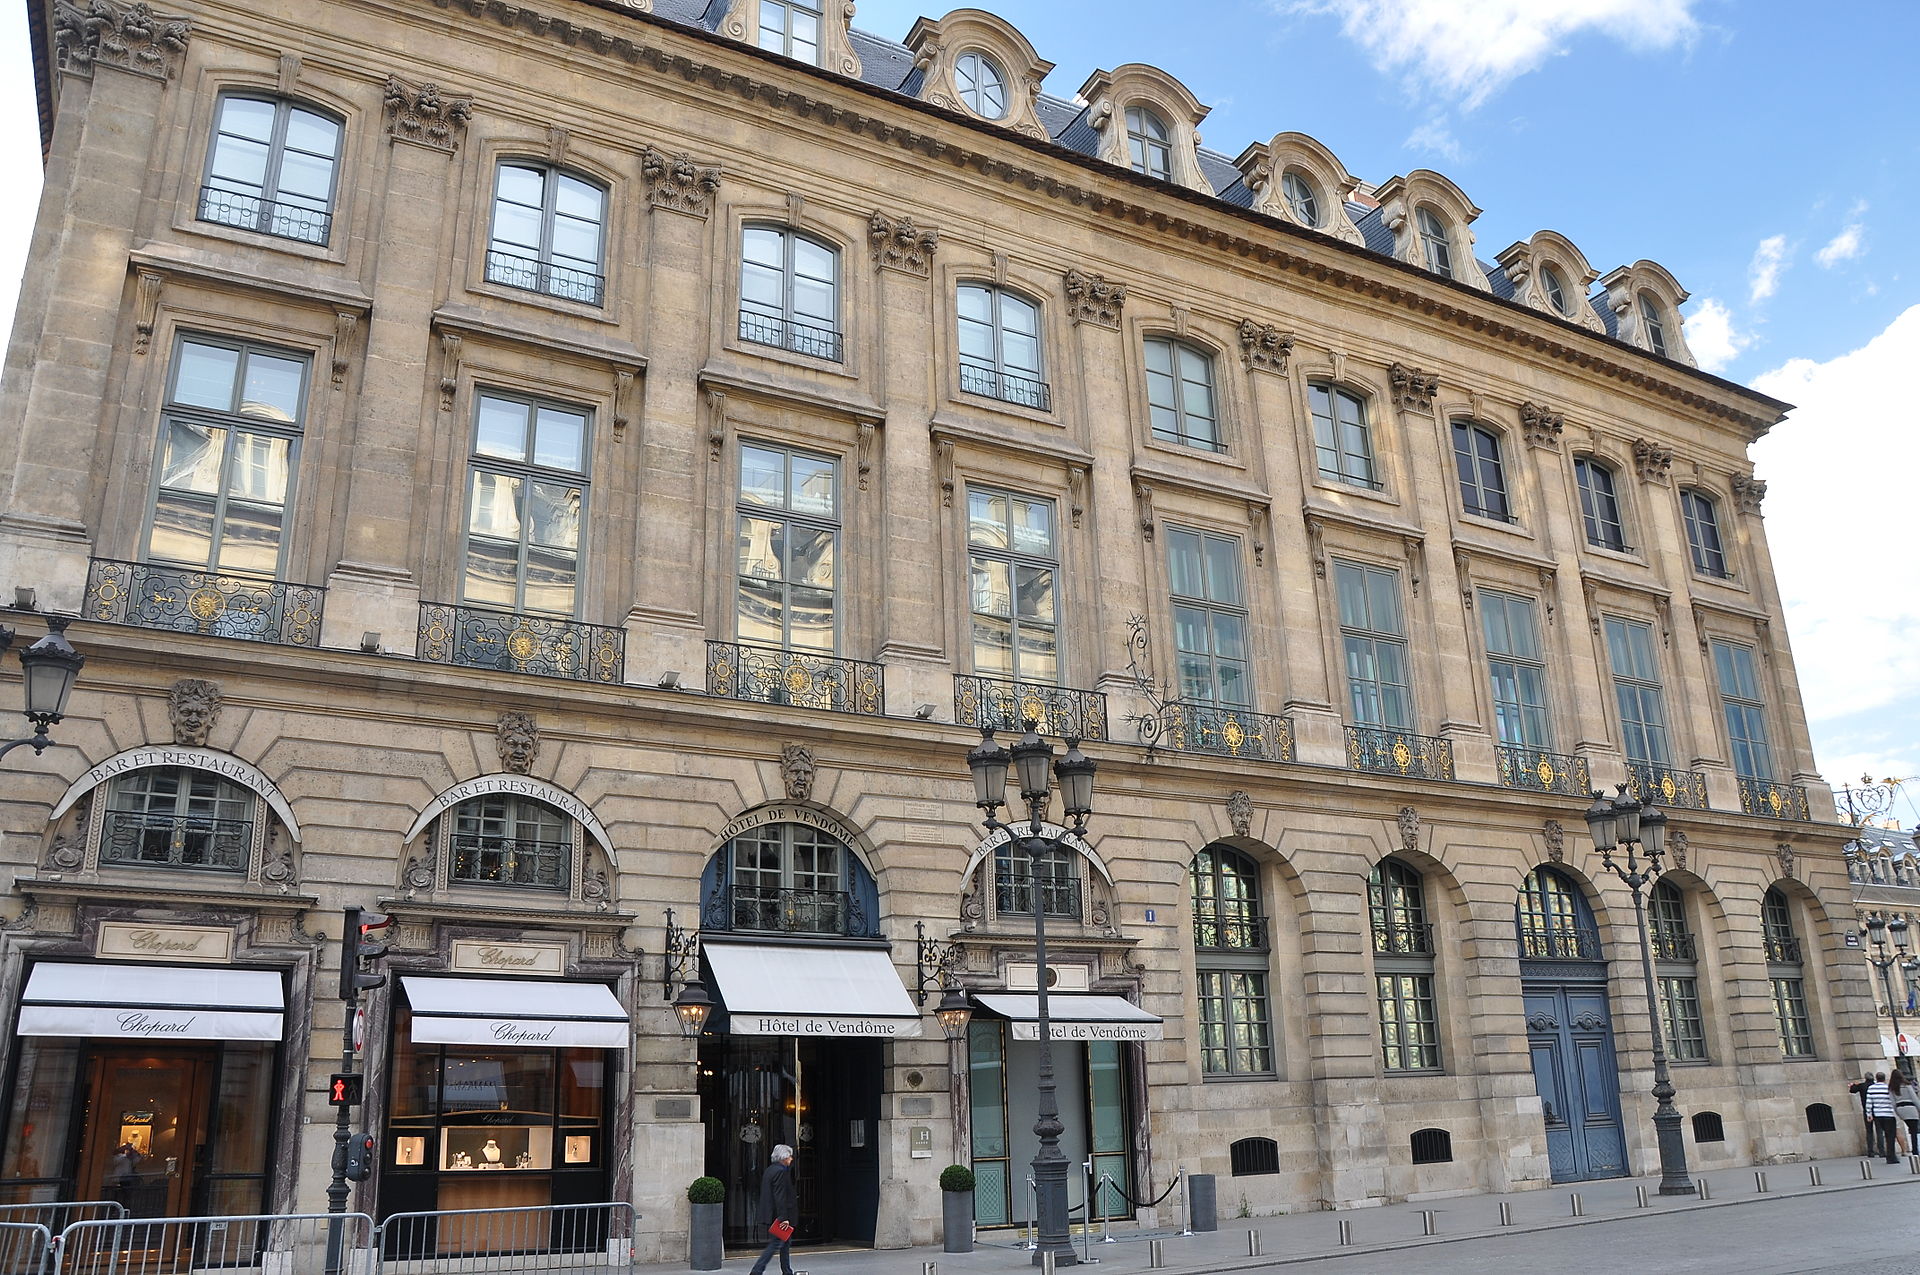 瑞士奢侈腕表珠宝品牌 Chopard 收购巴黎旺多姆酒店 Hôtel de Vendôme